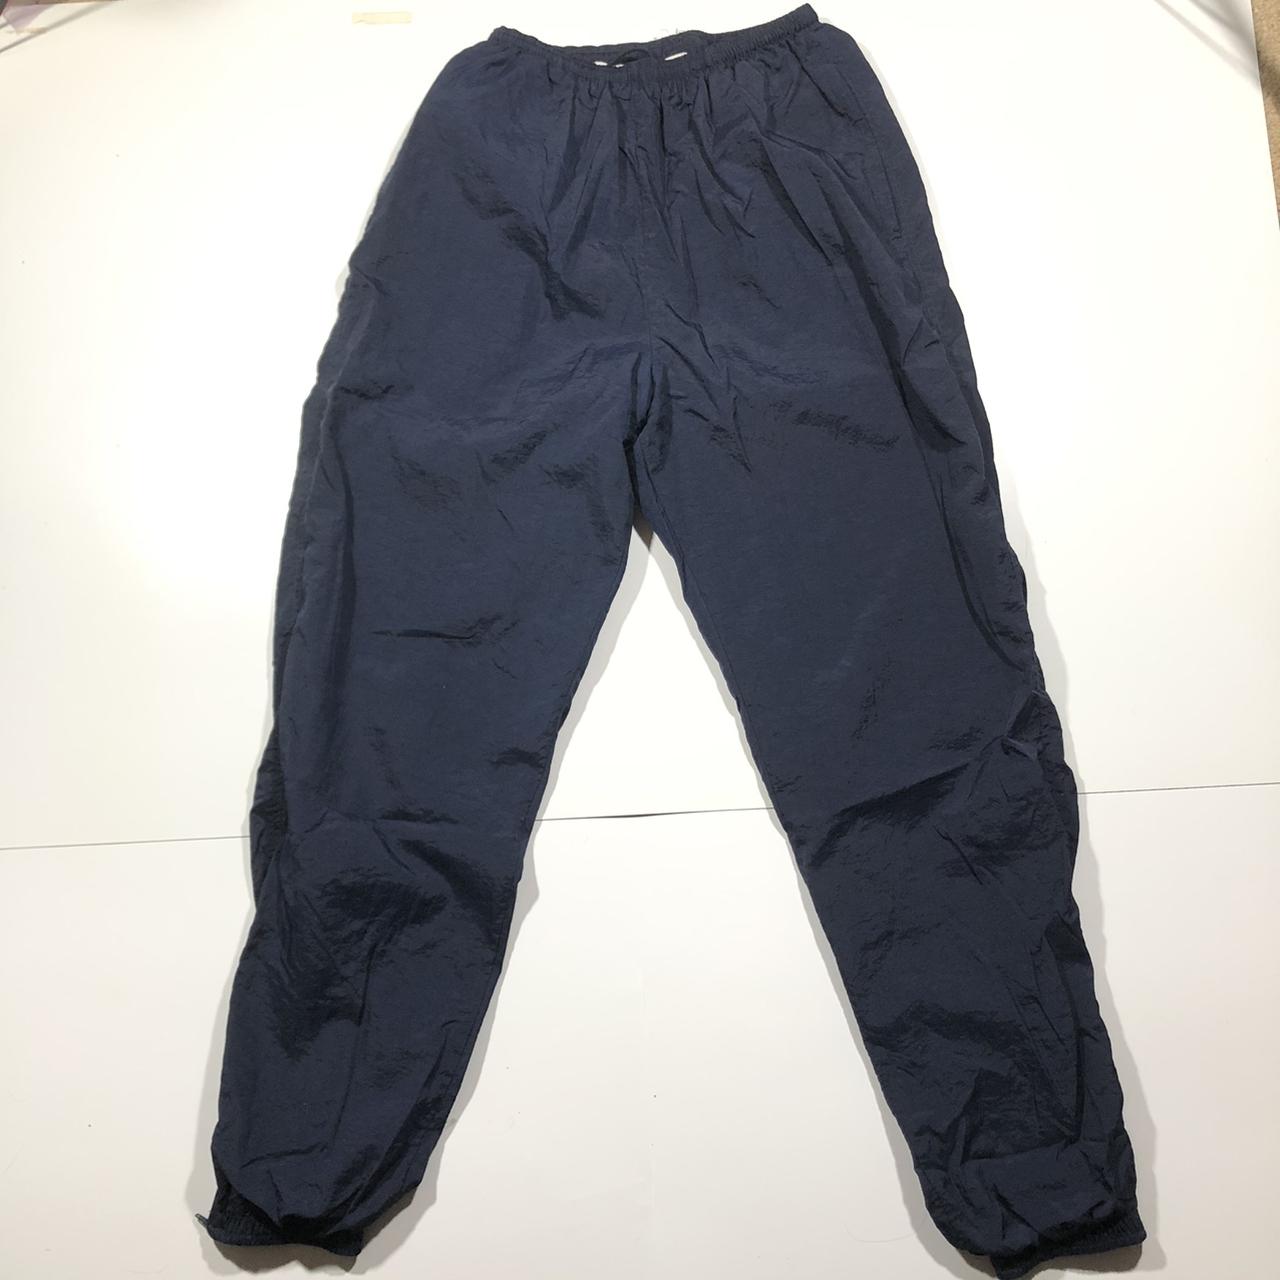 Vintage 90s Nike Navy Track Pants Sweatpants. Very... - Depop